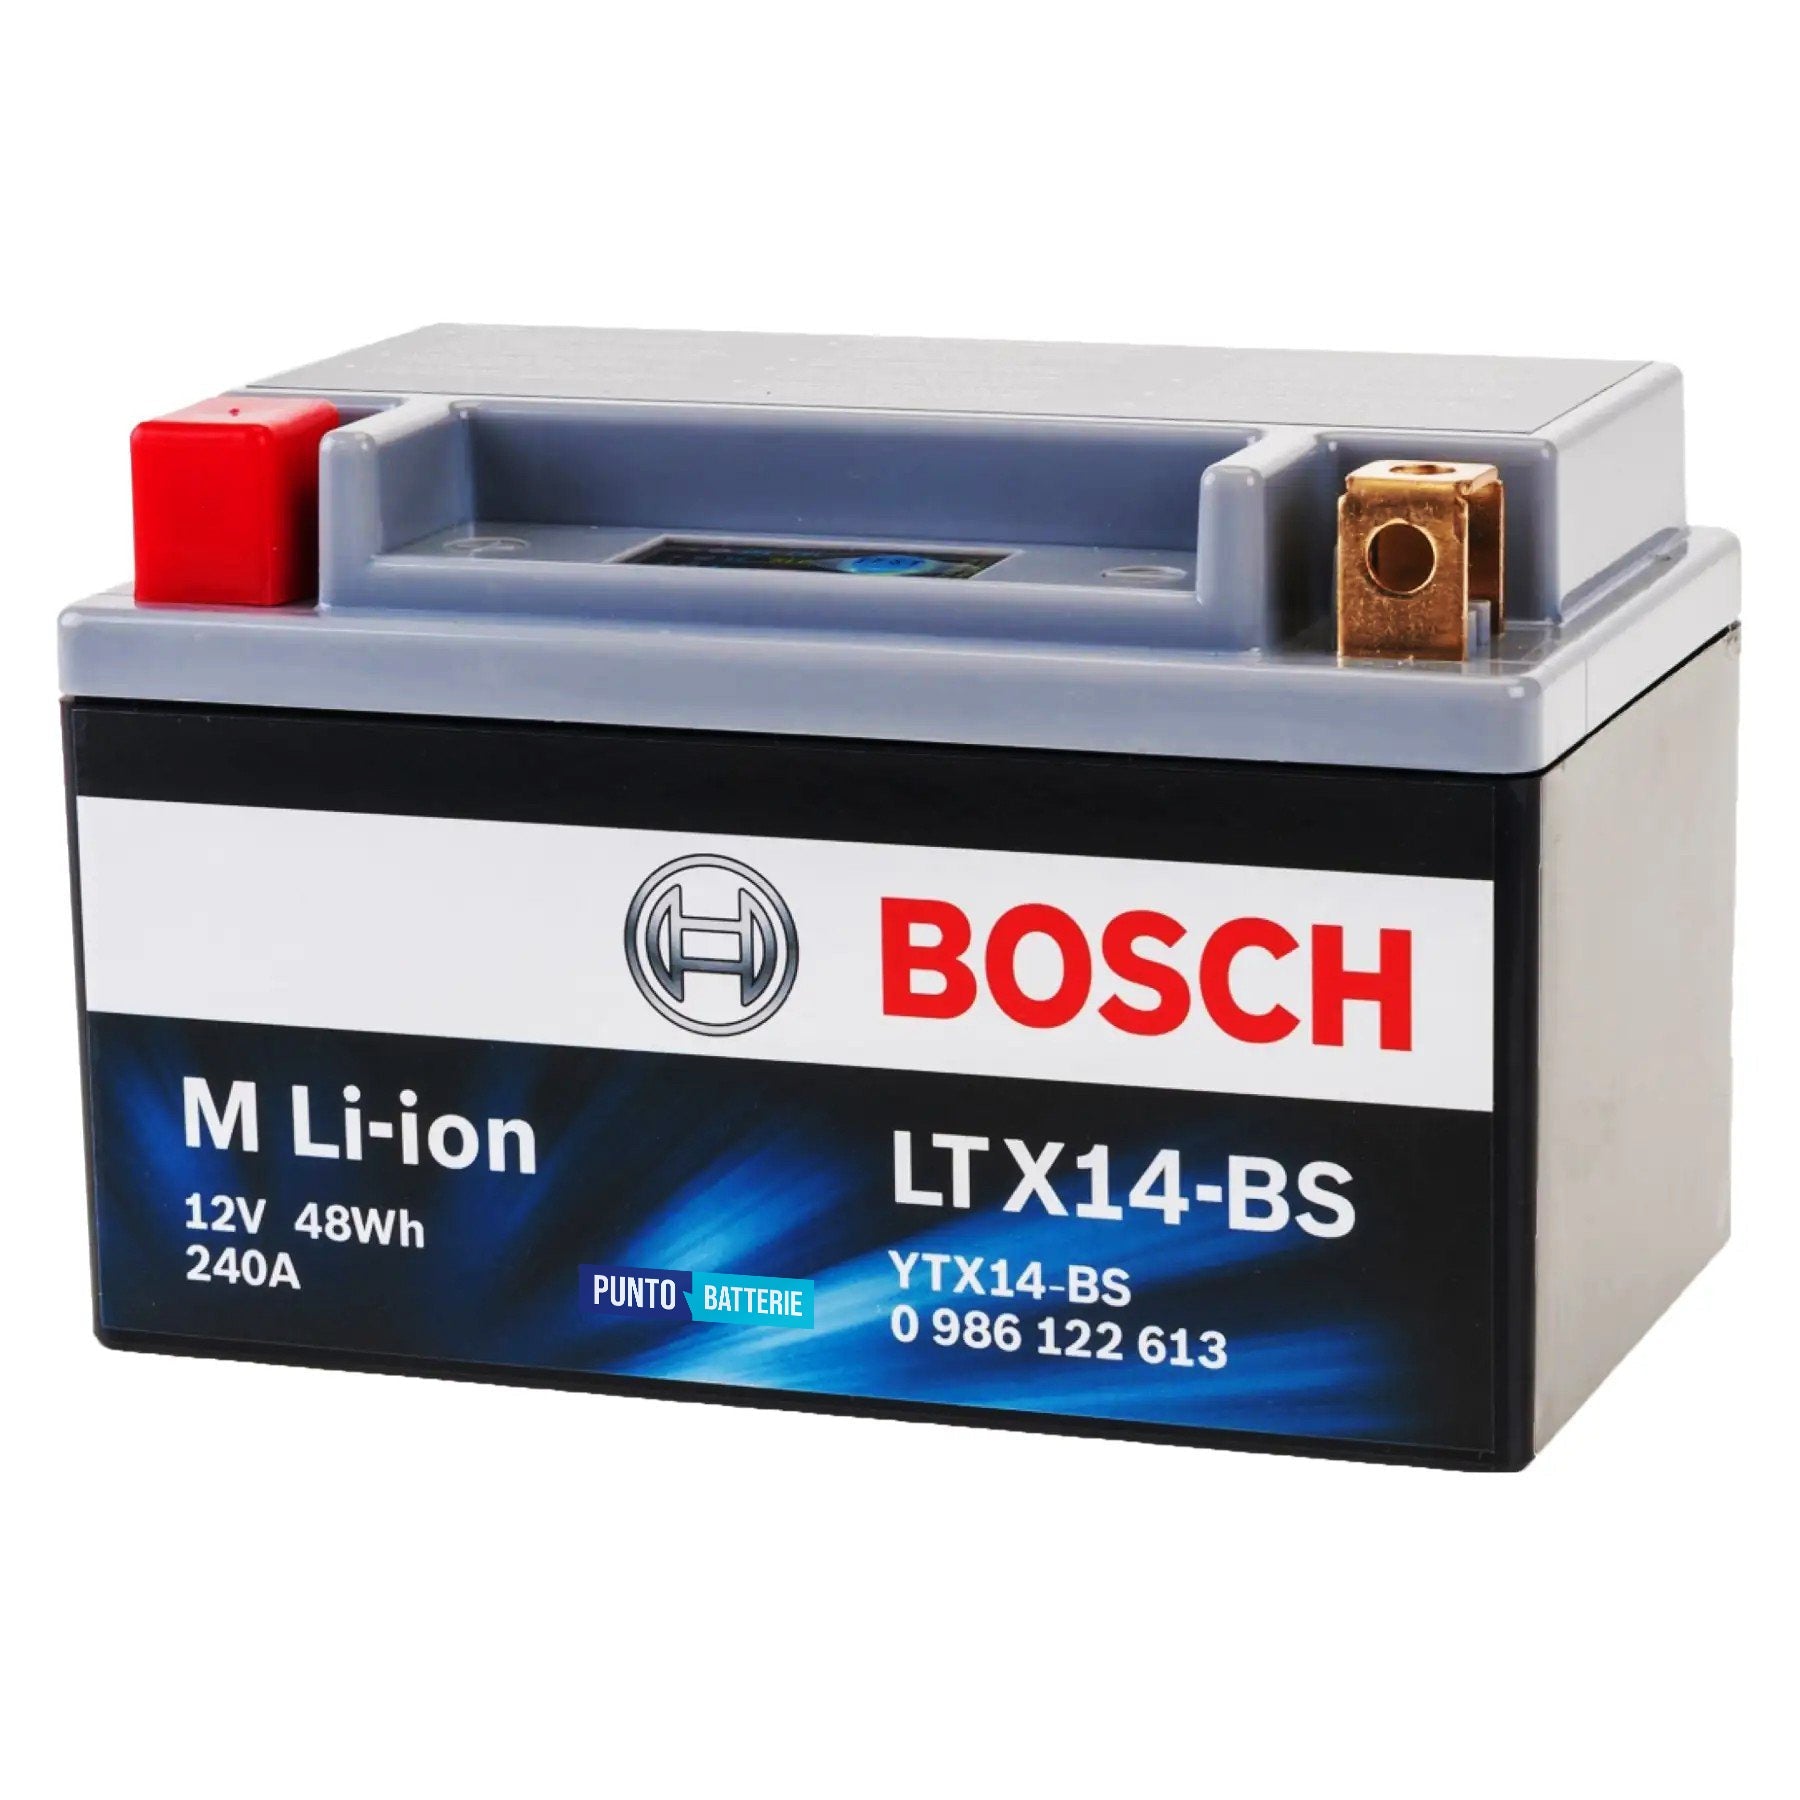 Batteria originale Bosch M Li-ion LTX14-BS, dimensioni 150 x 65 x 130, polo positivo a sinistra, 12 volt, 4 amperora, 240 ampere. Batteria per moto, scooter e powersport.